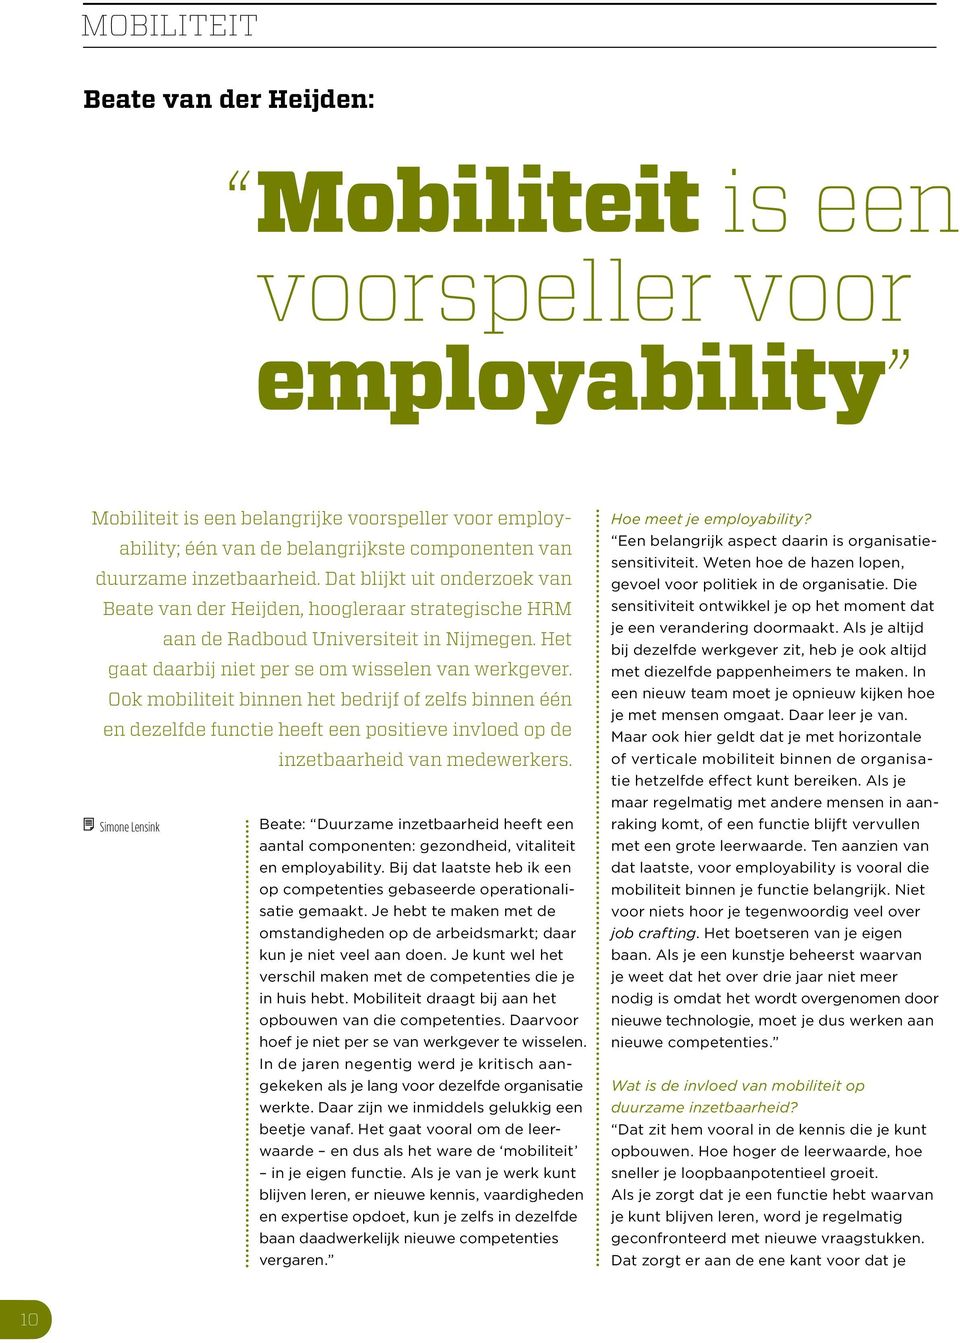 Ook mobiliteit binnen het bedrijf of zelfs binnen één en dezelfde functie heeft een positieve invloed op de inzetbaarheid van medewerkers.